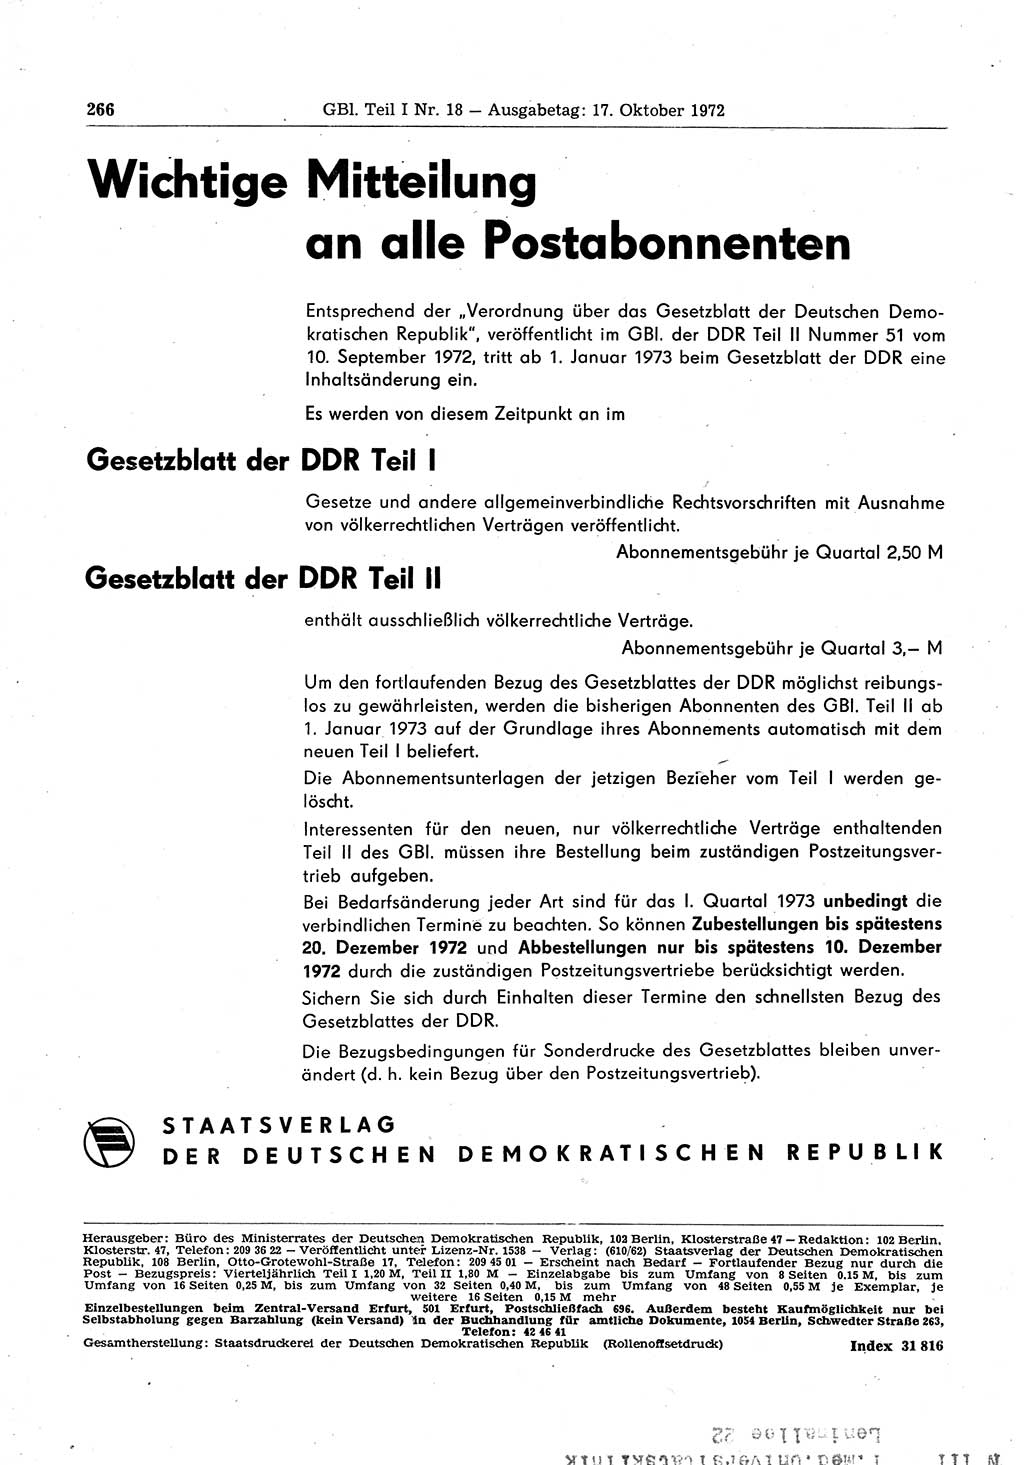 Gesetzblatt (GBl.) der Deutschen Demokratischen Republik (DDR) Teil Ⅰ 1972, Seite 266 (GBl. DDR Ⅰ 1972, S. 266)